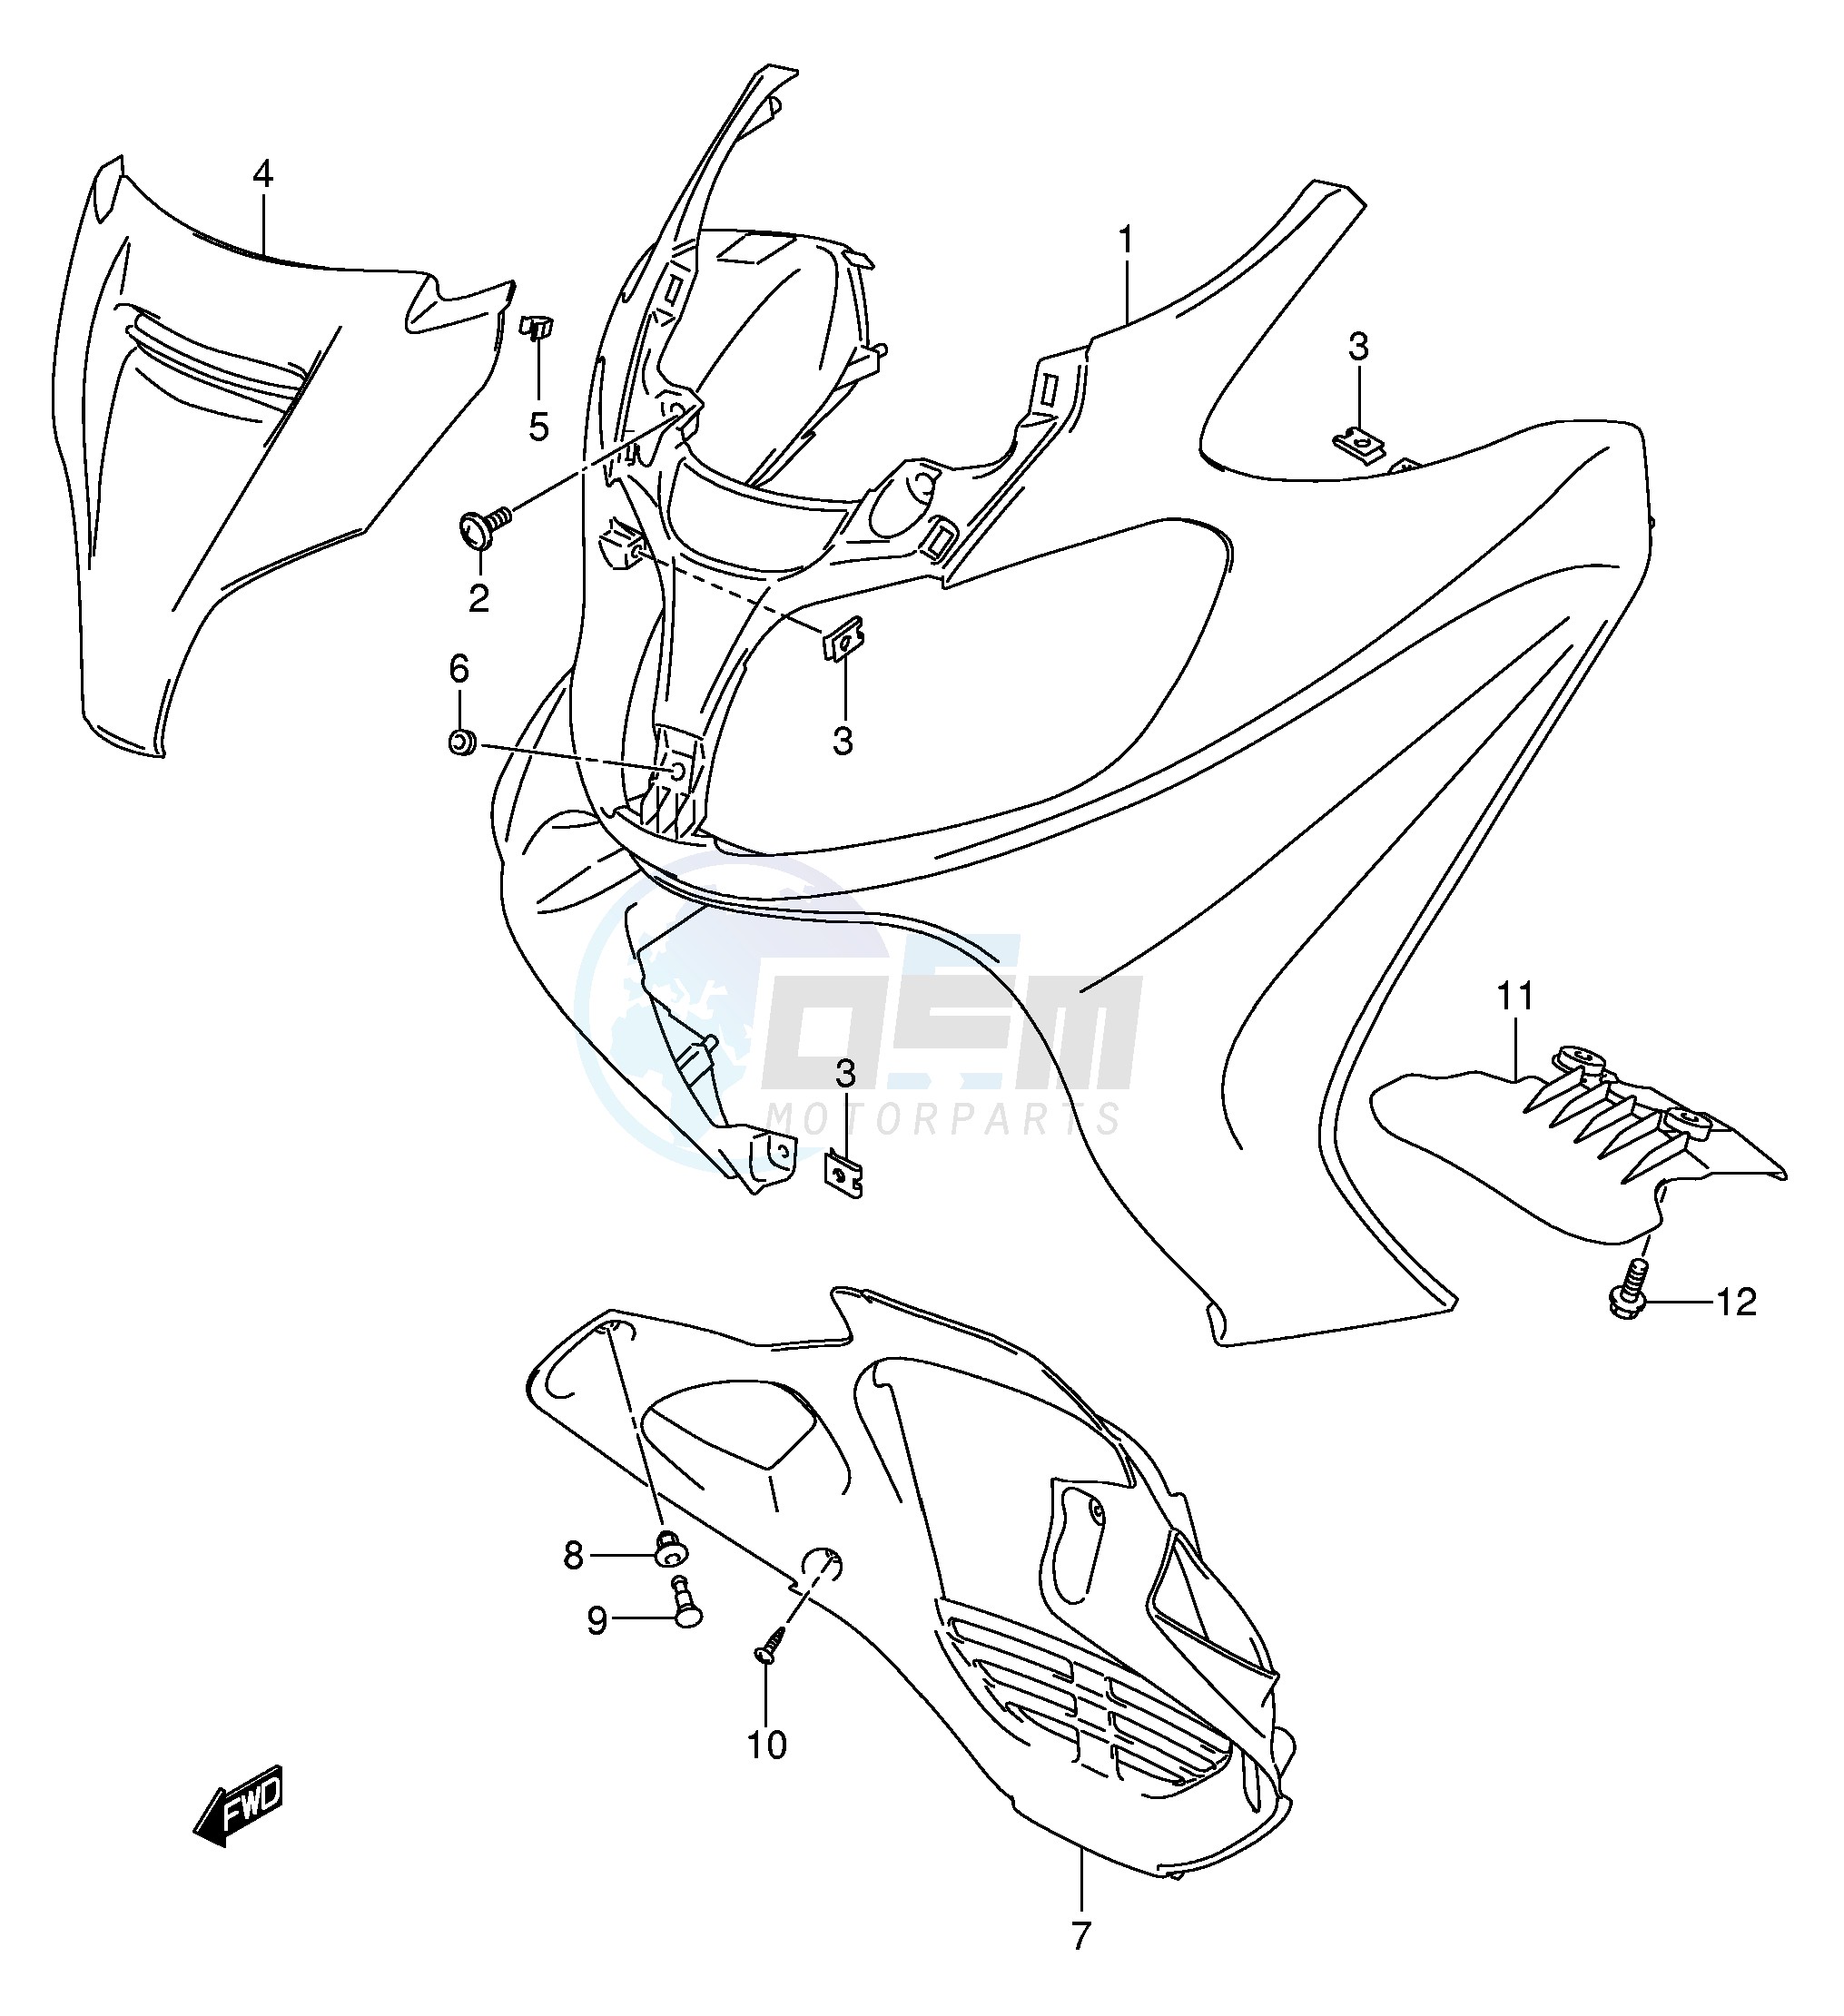 FRONT LEG SHIELD (AN650AK5) blueprint